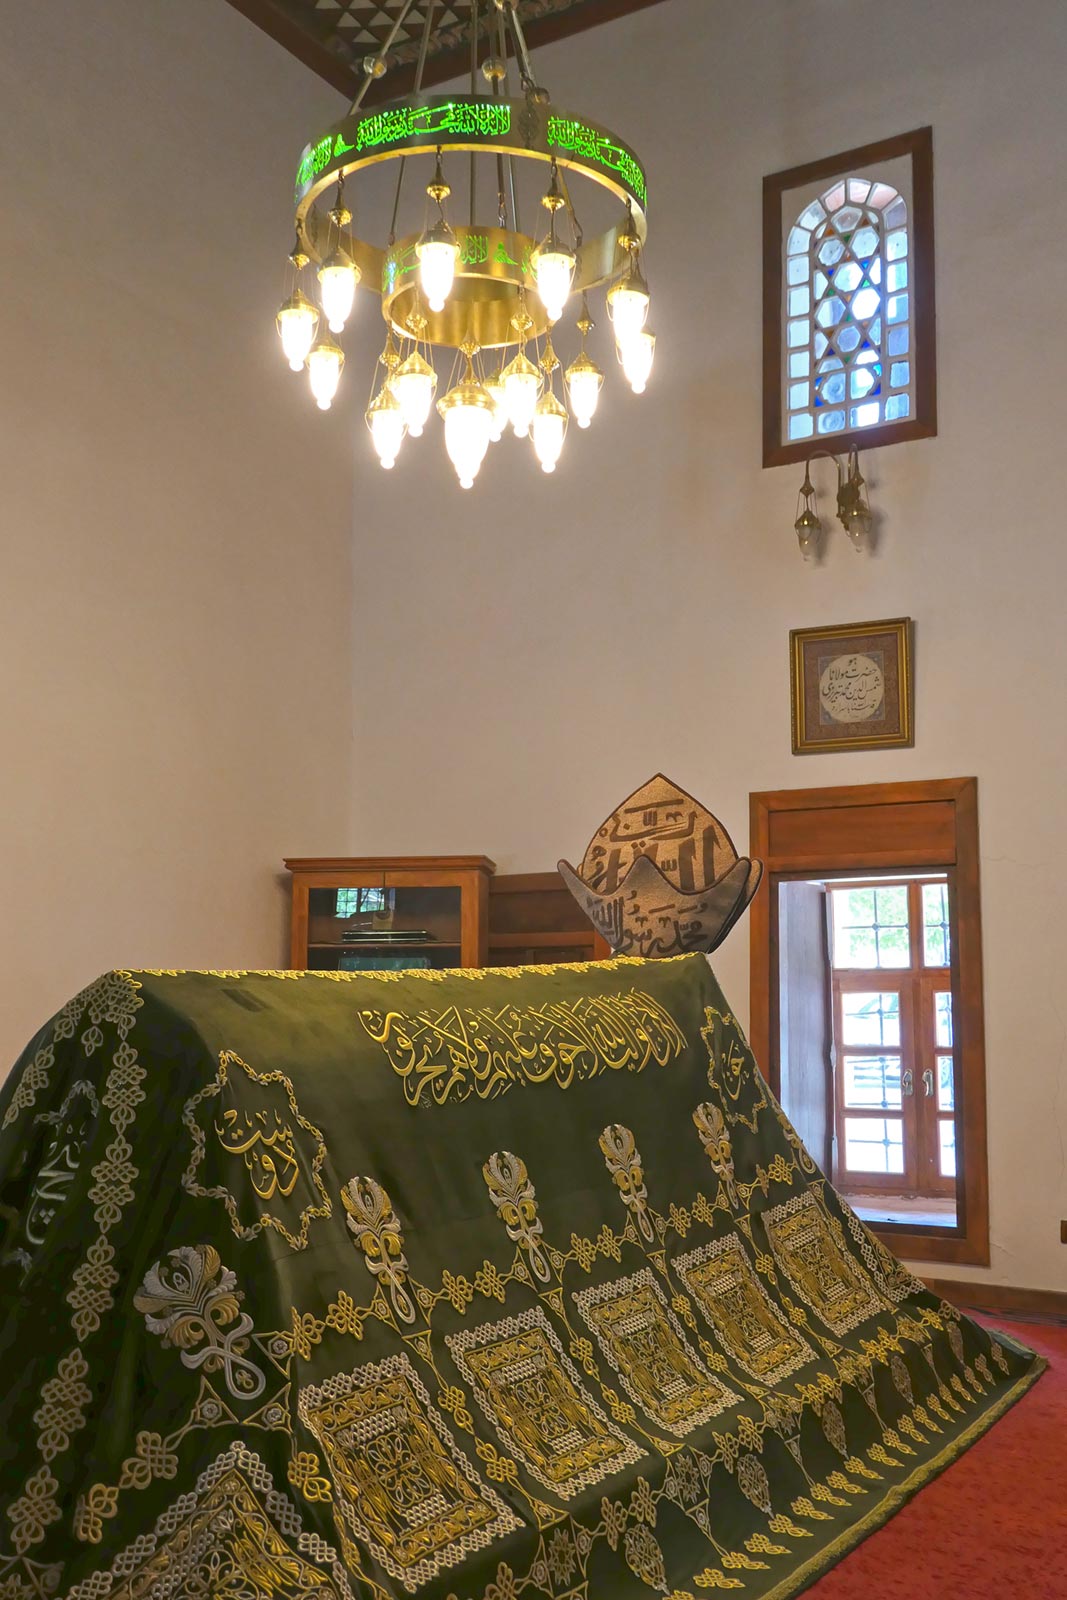 Heiligdom van Hazrat Shemsuddin van Tabriz (leraar van Rumi) Konya